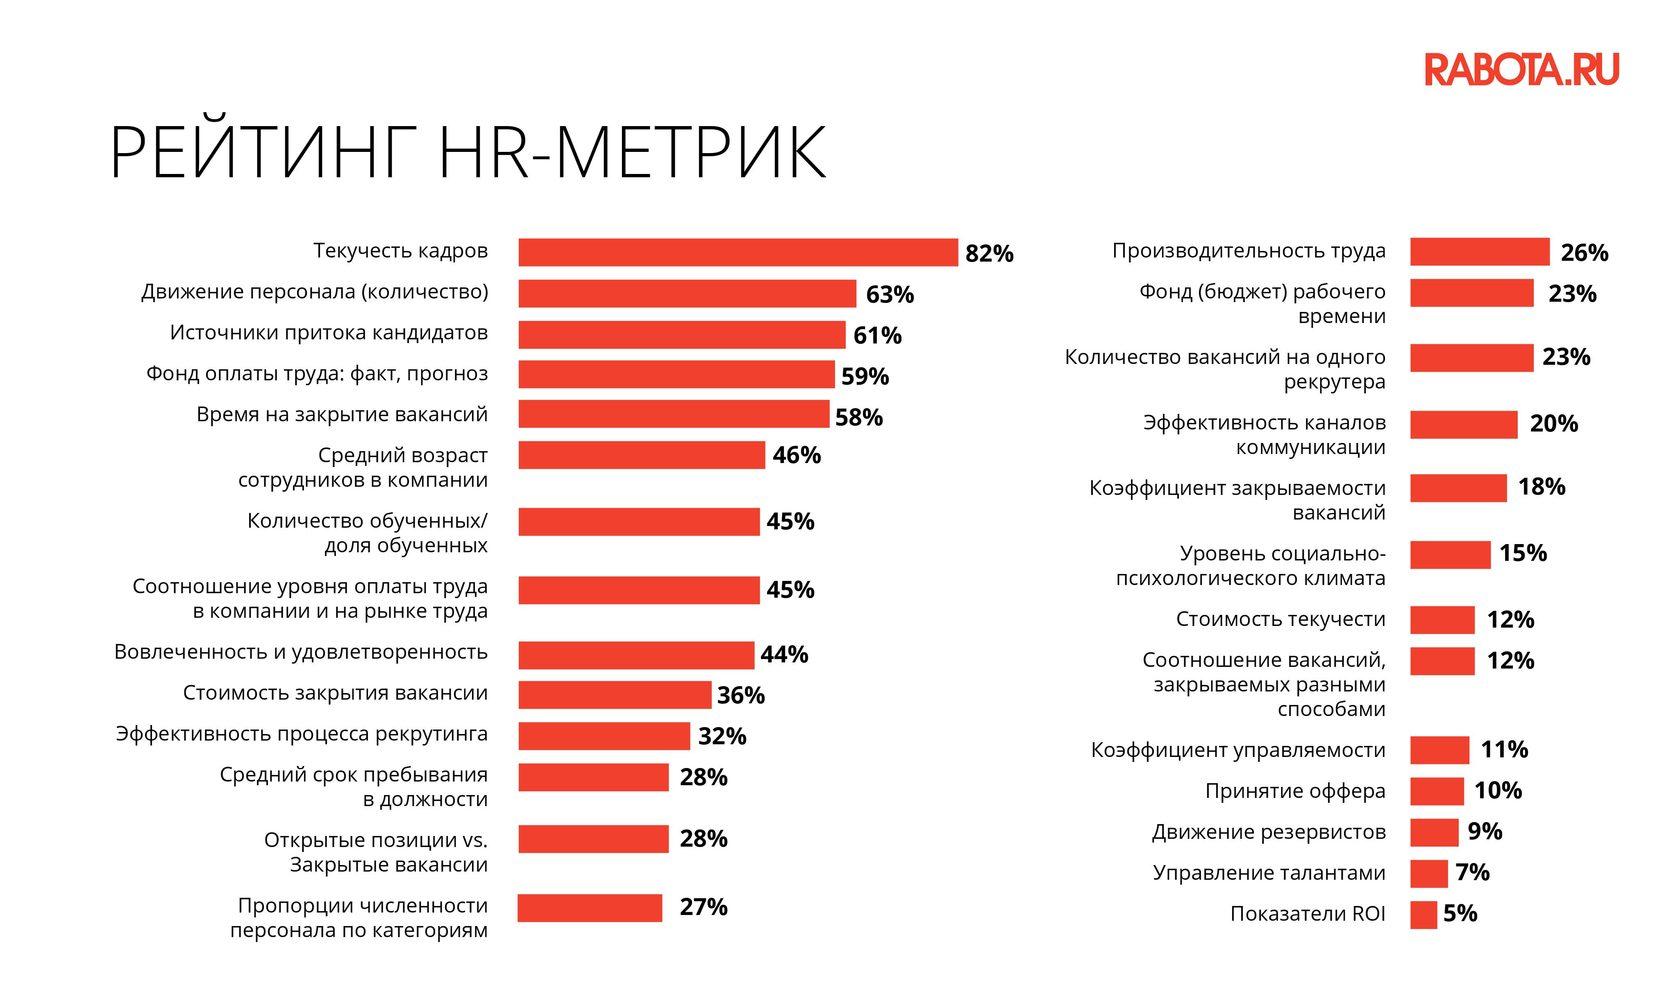 Популярные HR-метрики